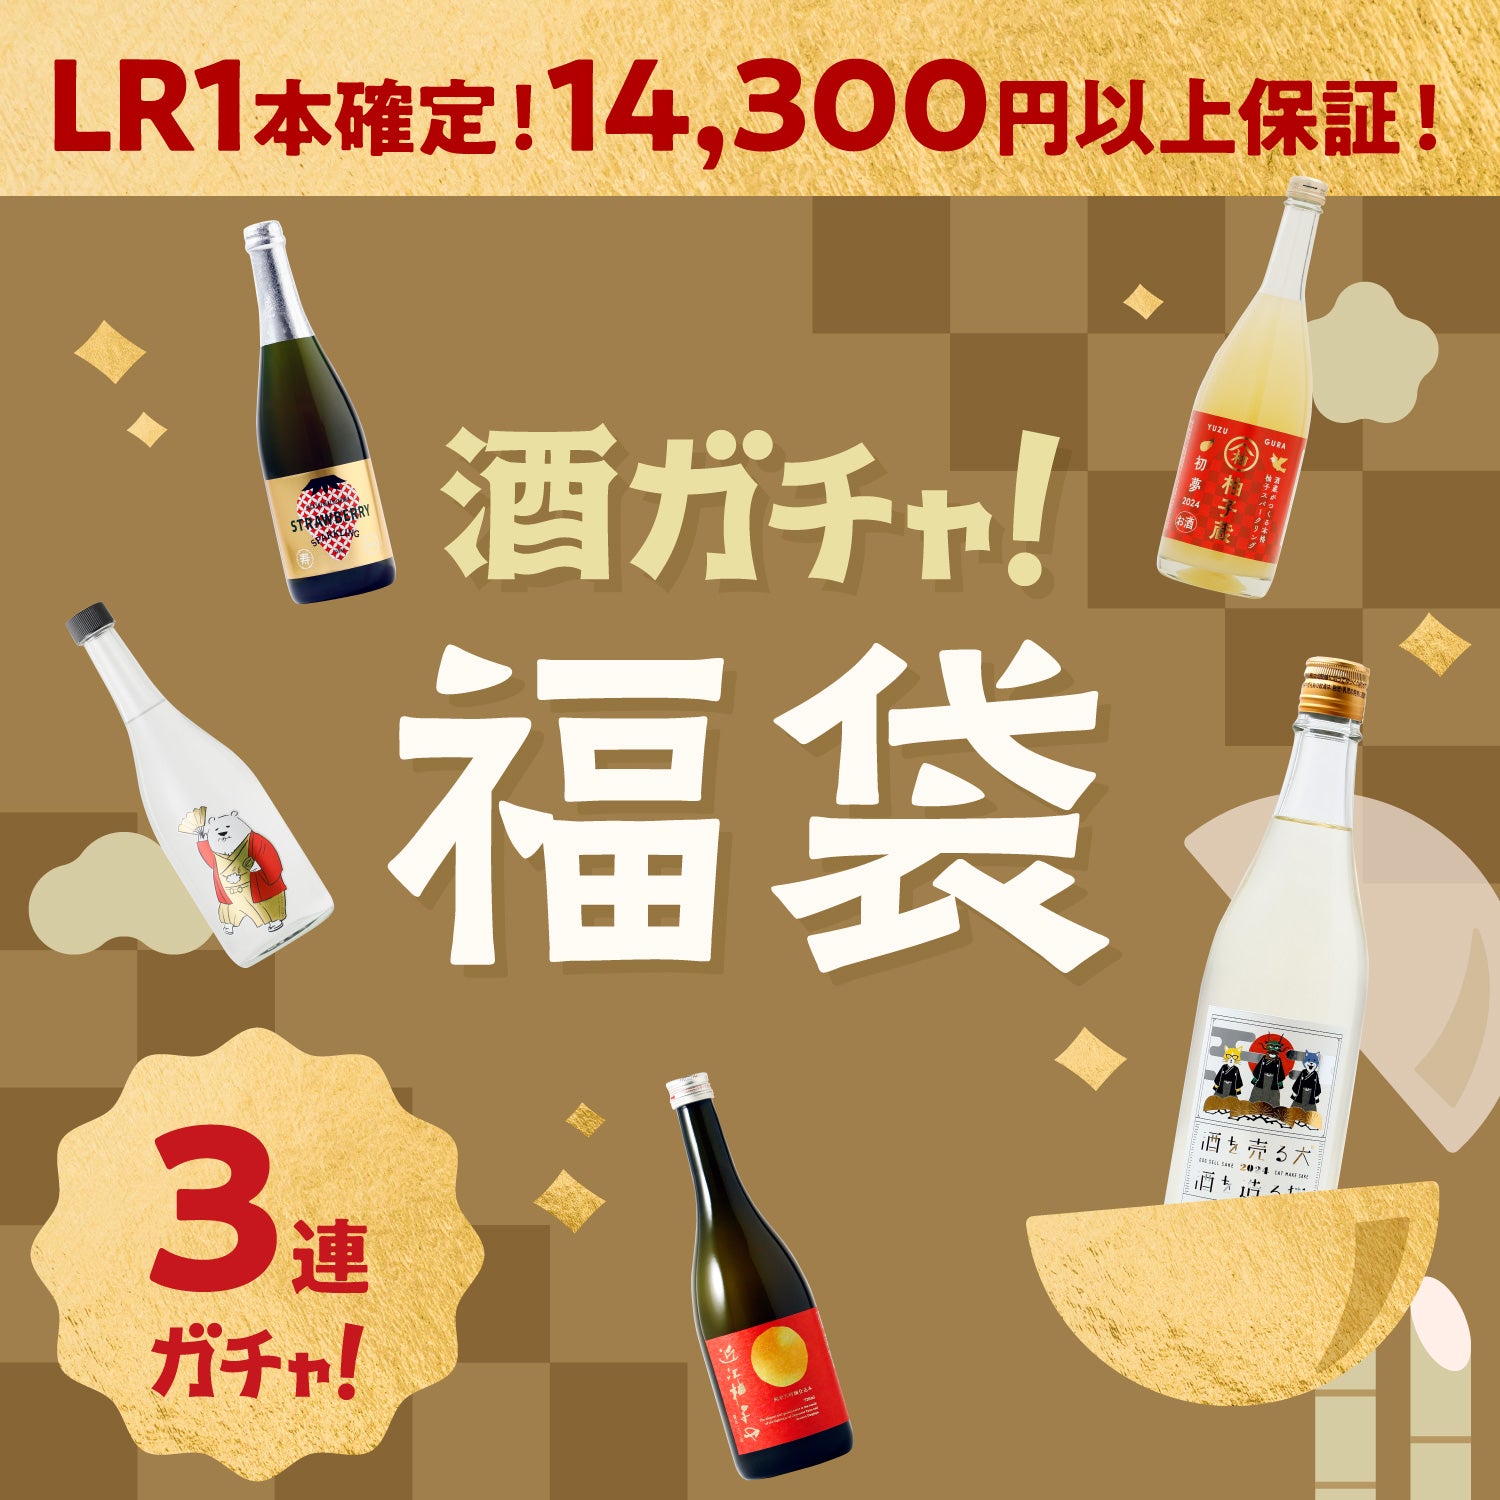 【解読者限定】酒ガチャ福袋 レジェンドレア確定プラン